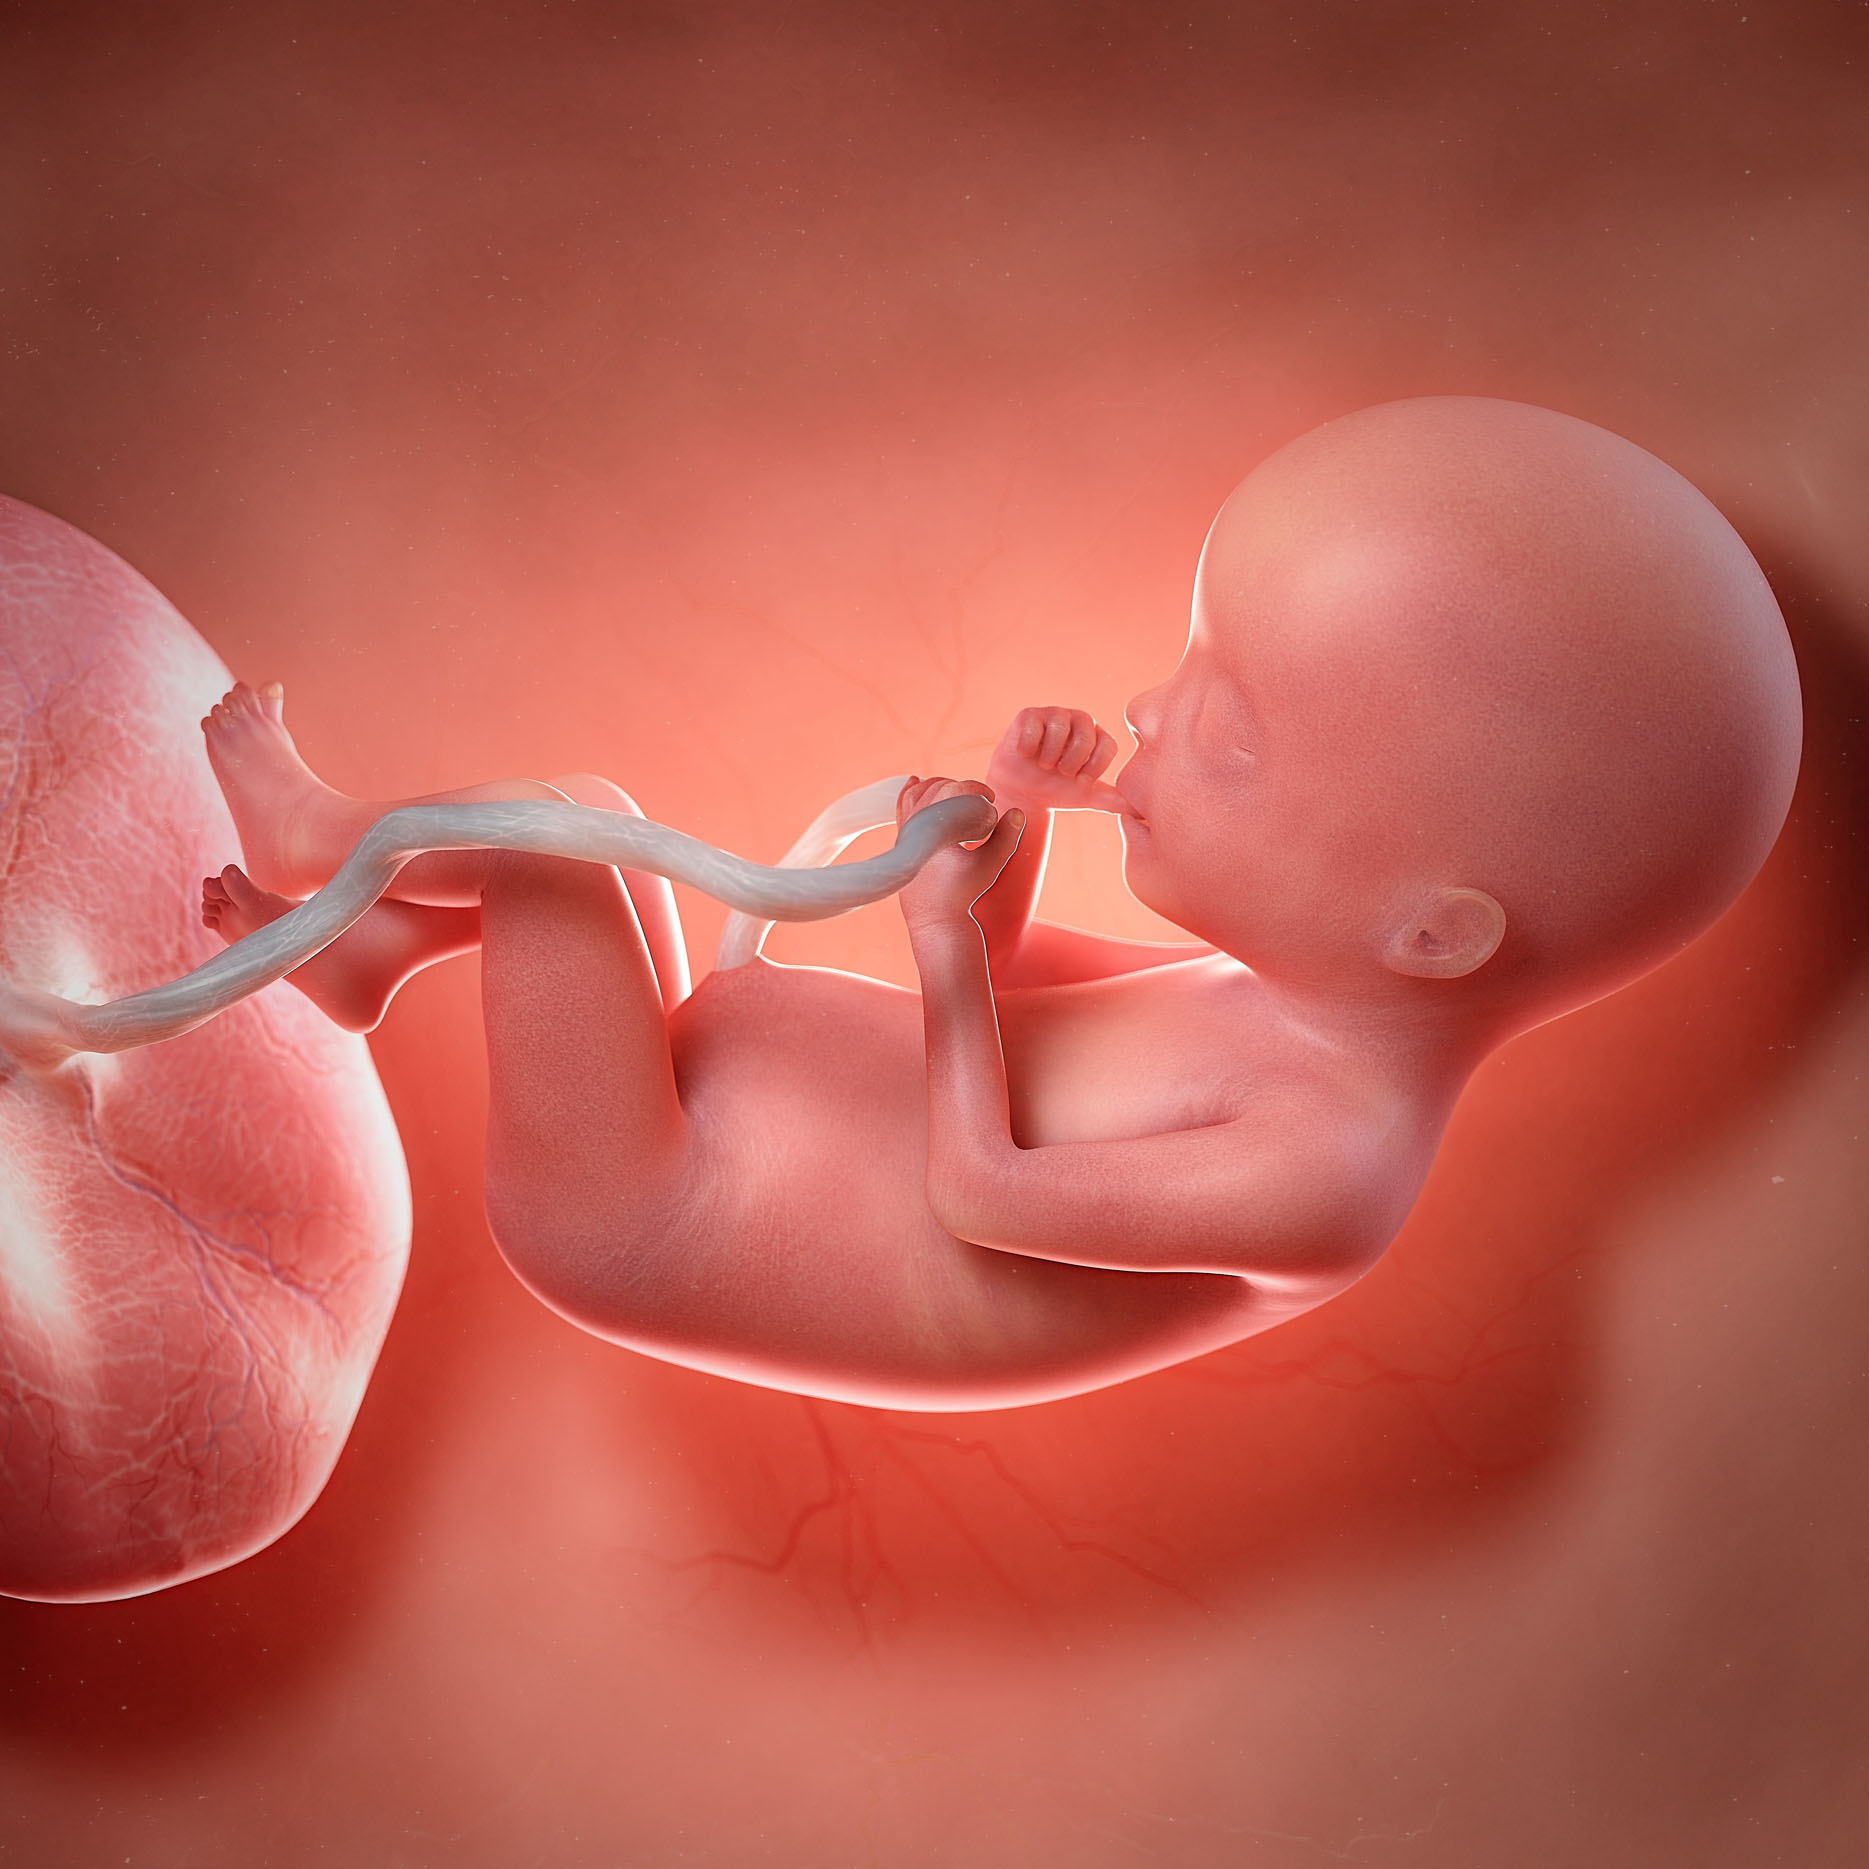 胎儿三个月时,这些特征已经基本"定型",后期再想改变很难